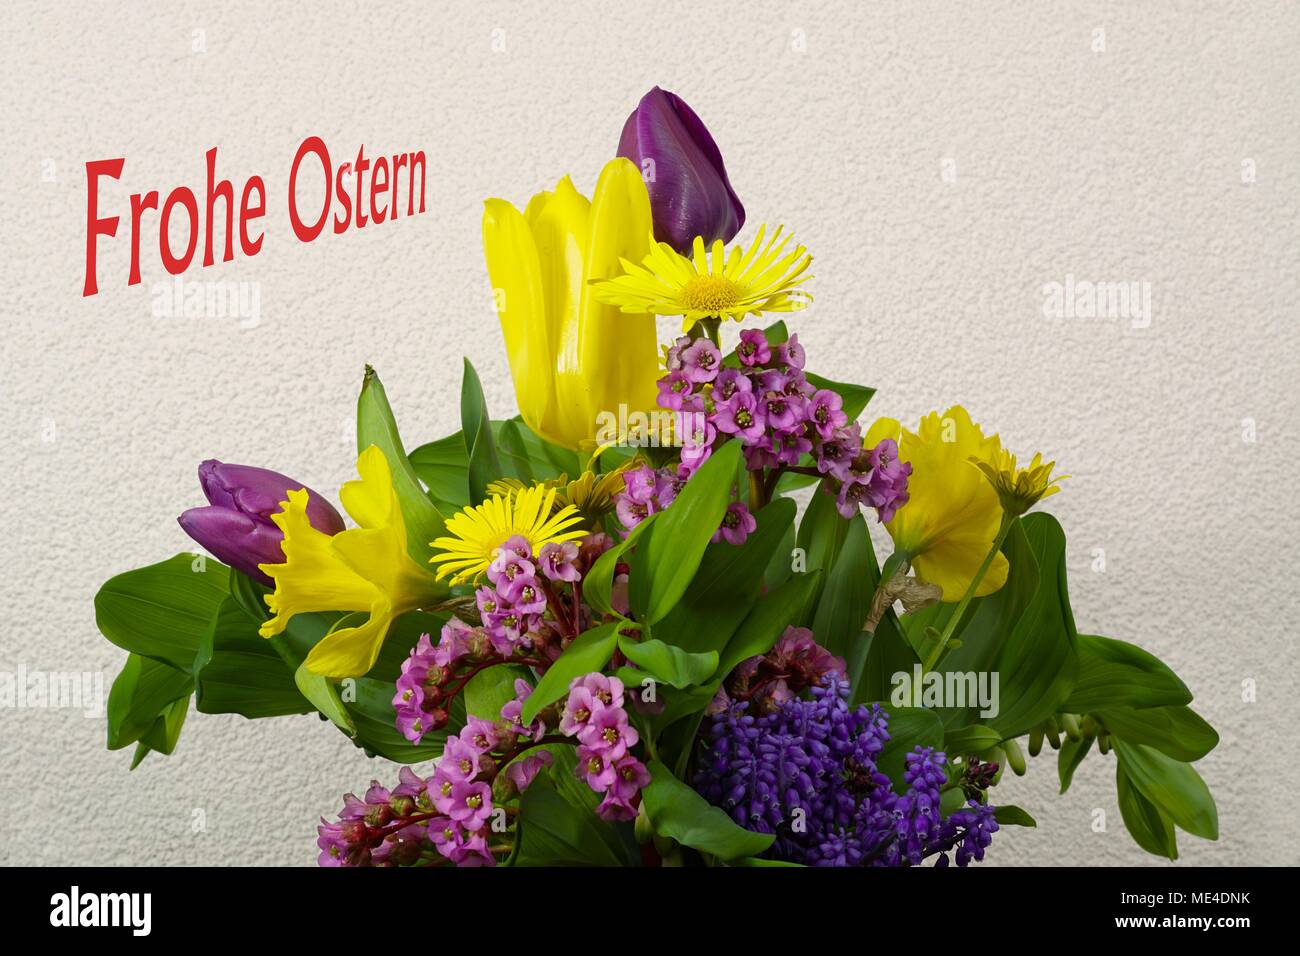 Osterstrauß - Blumenstrauss Foto Stock